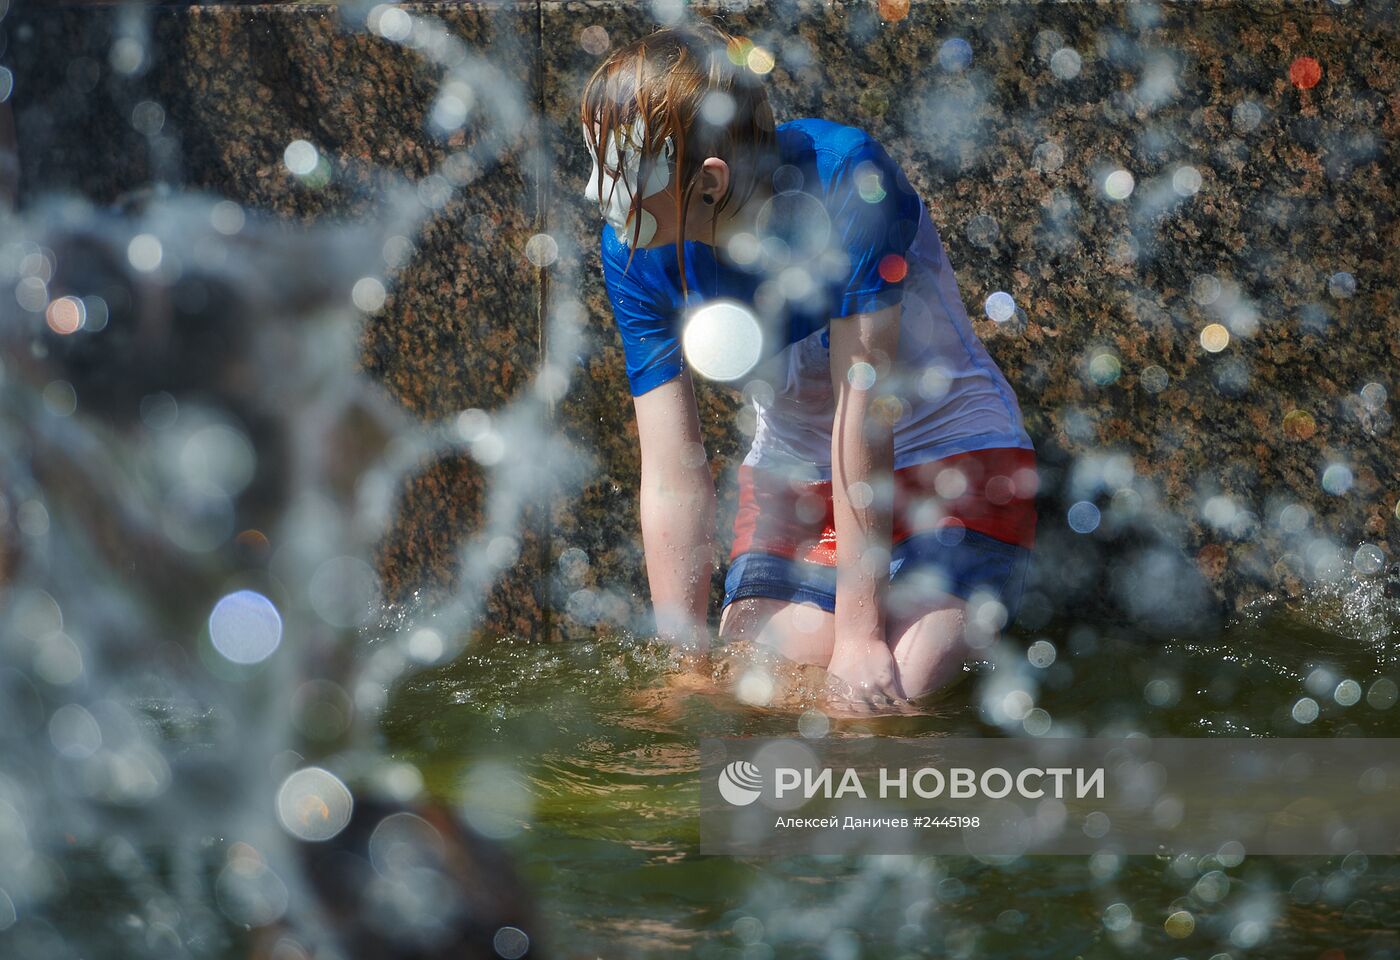 Флешмоб "Водяная битва" в Санкт-Петербурге